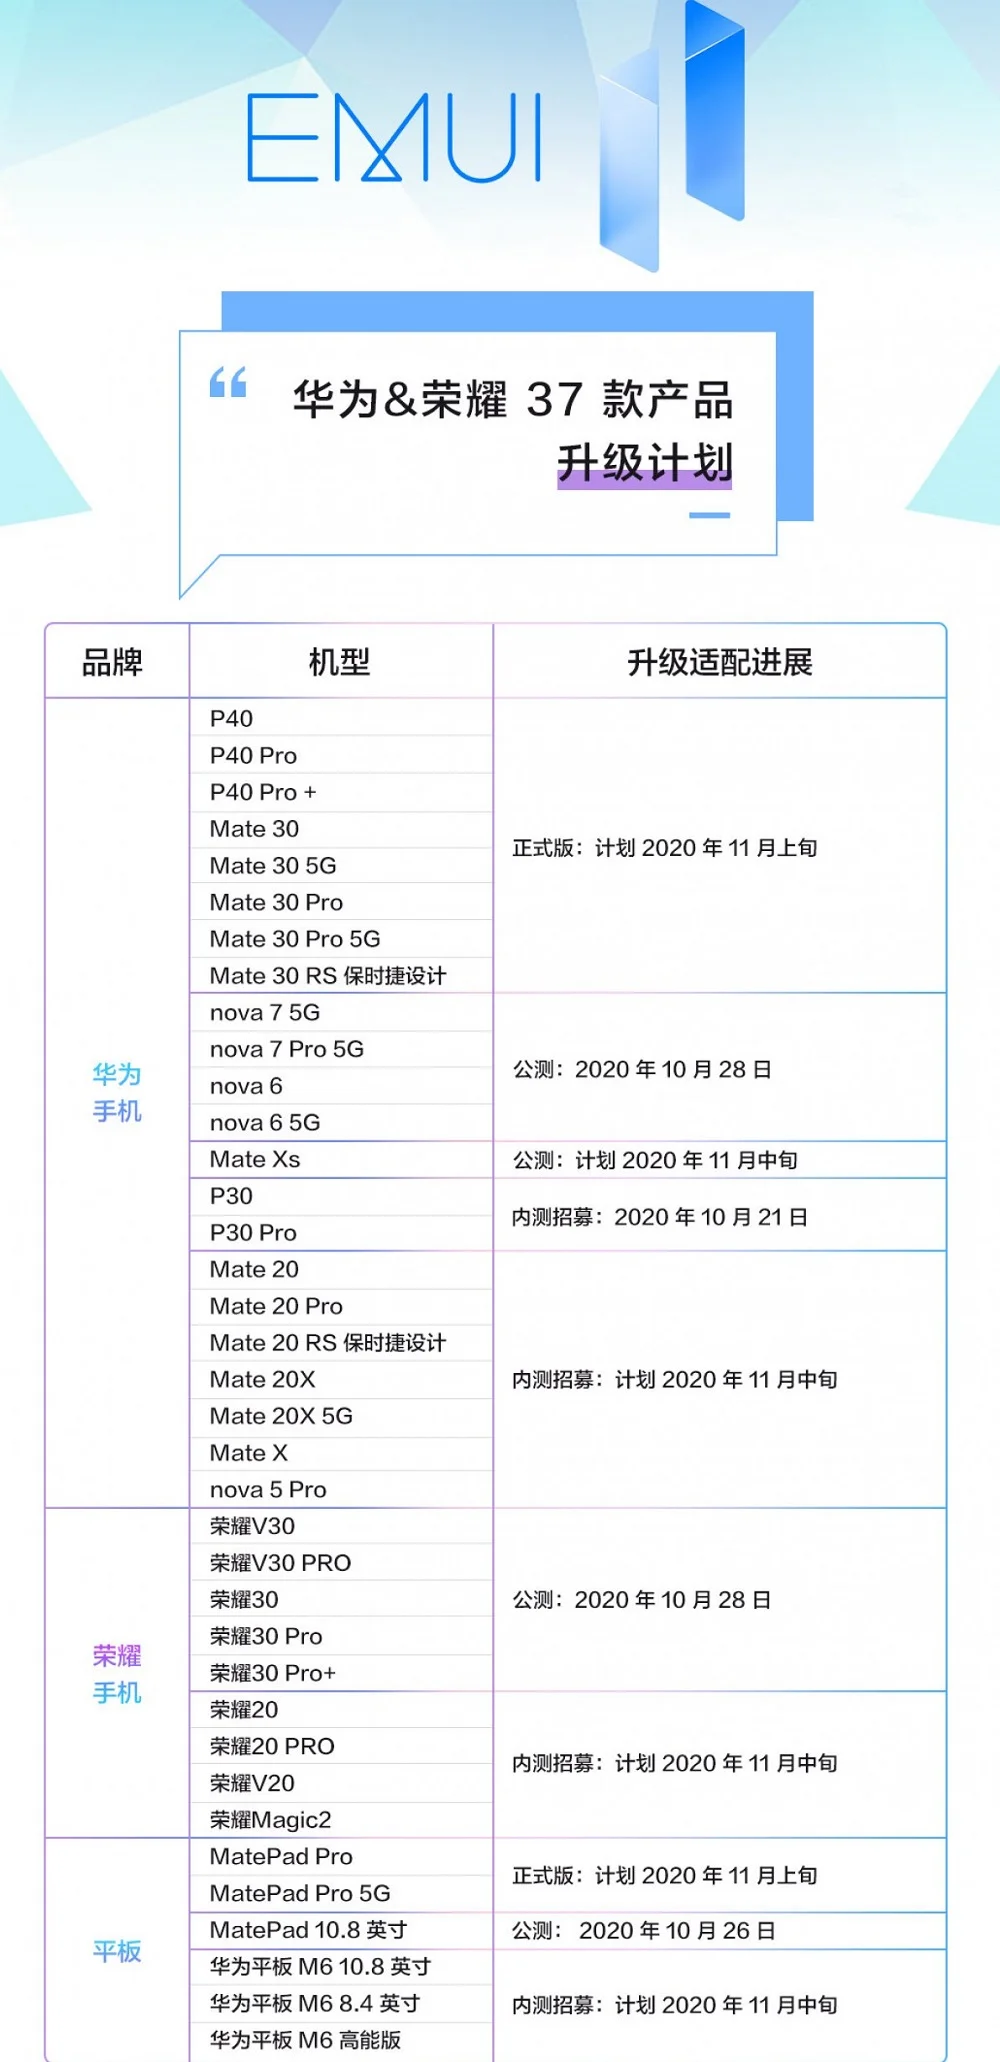 Опубликована карта выхода обновлений бета-версии EMUI 11 для 37 аппаратов Huawei и Honor - фото 1